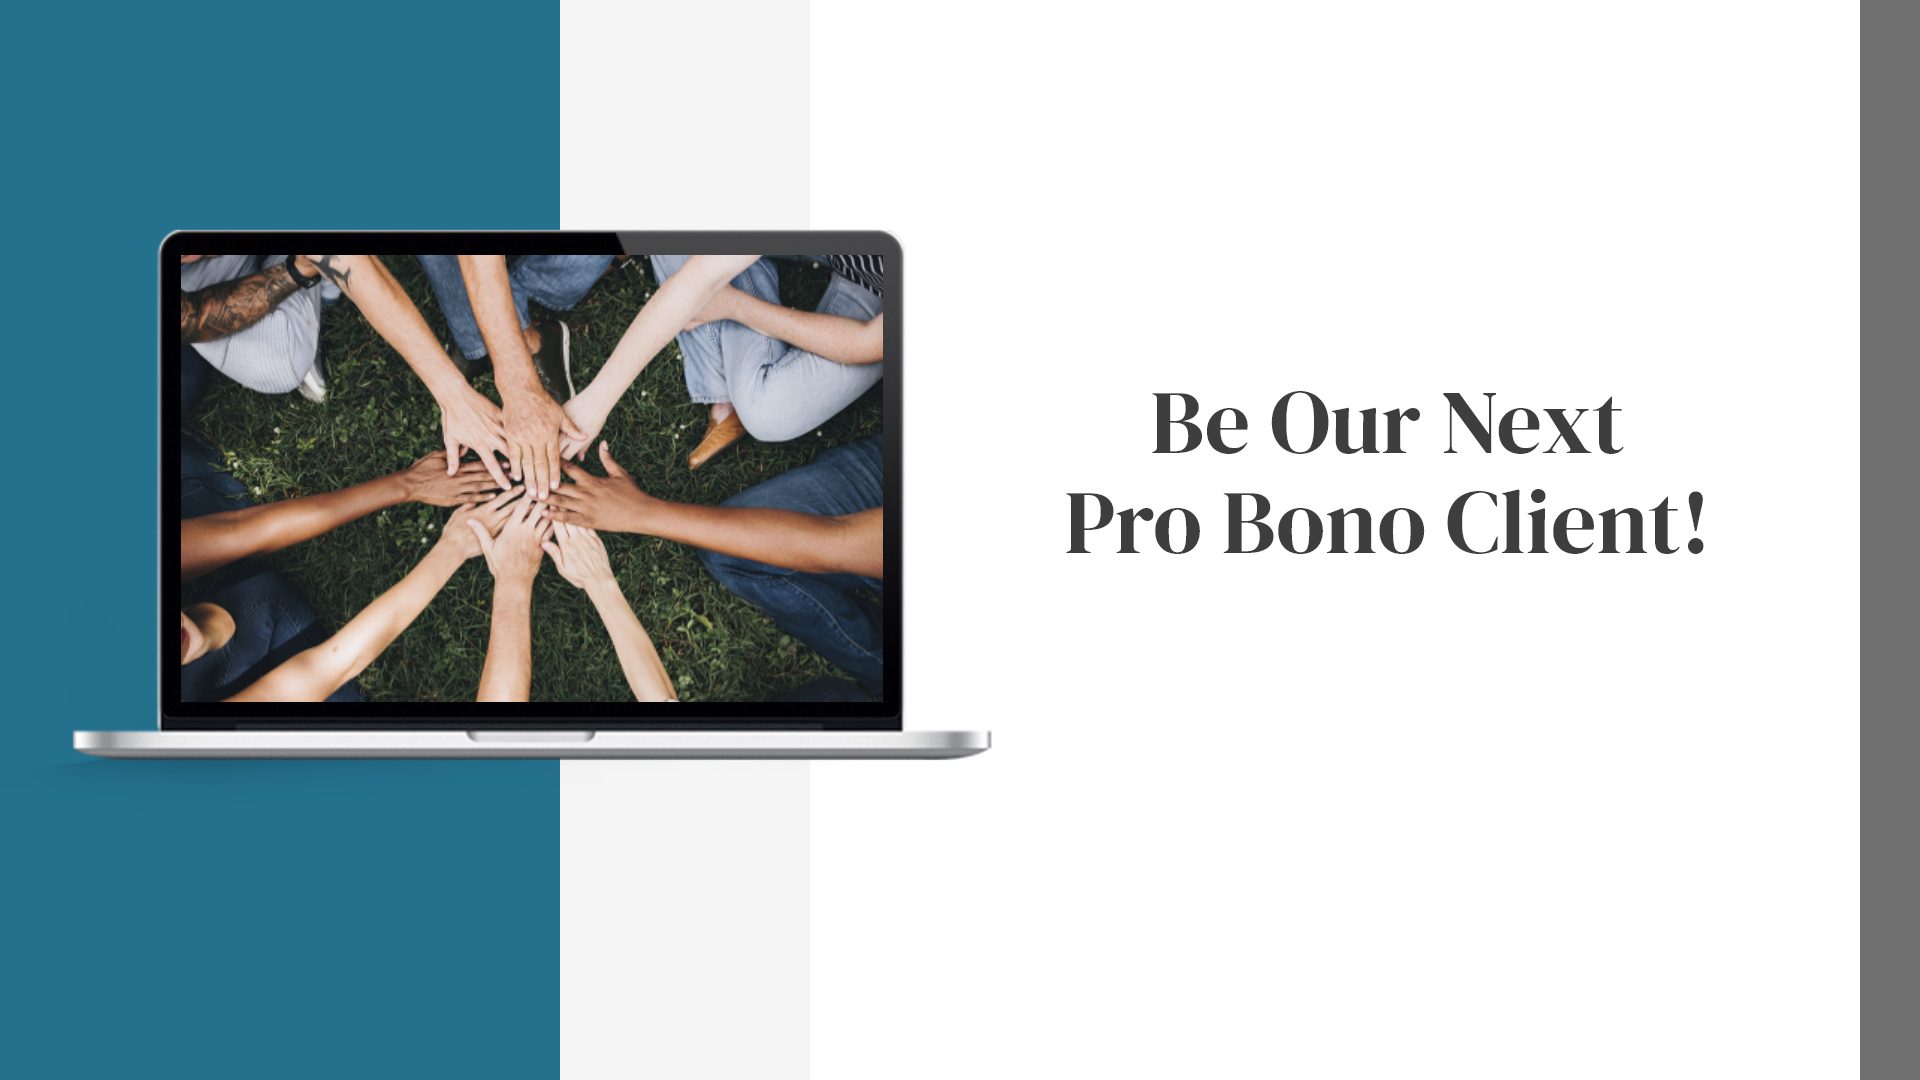 Be Our Next Pro Bono Client!